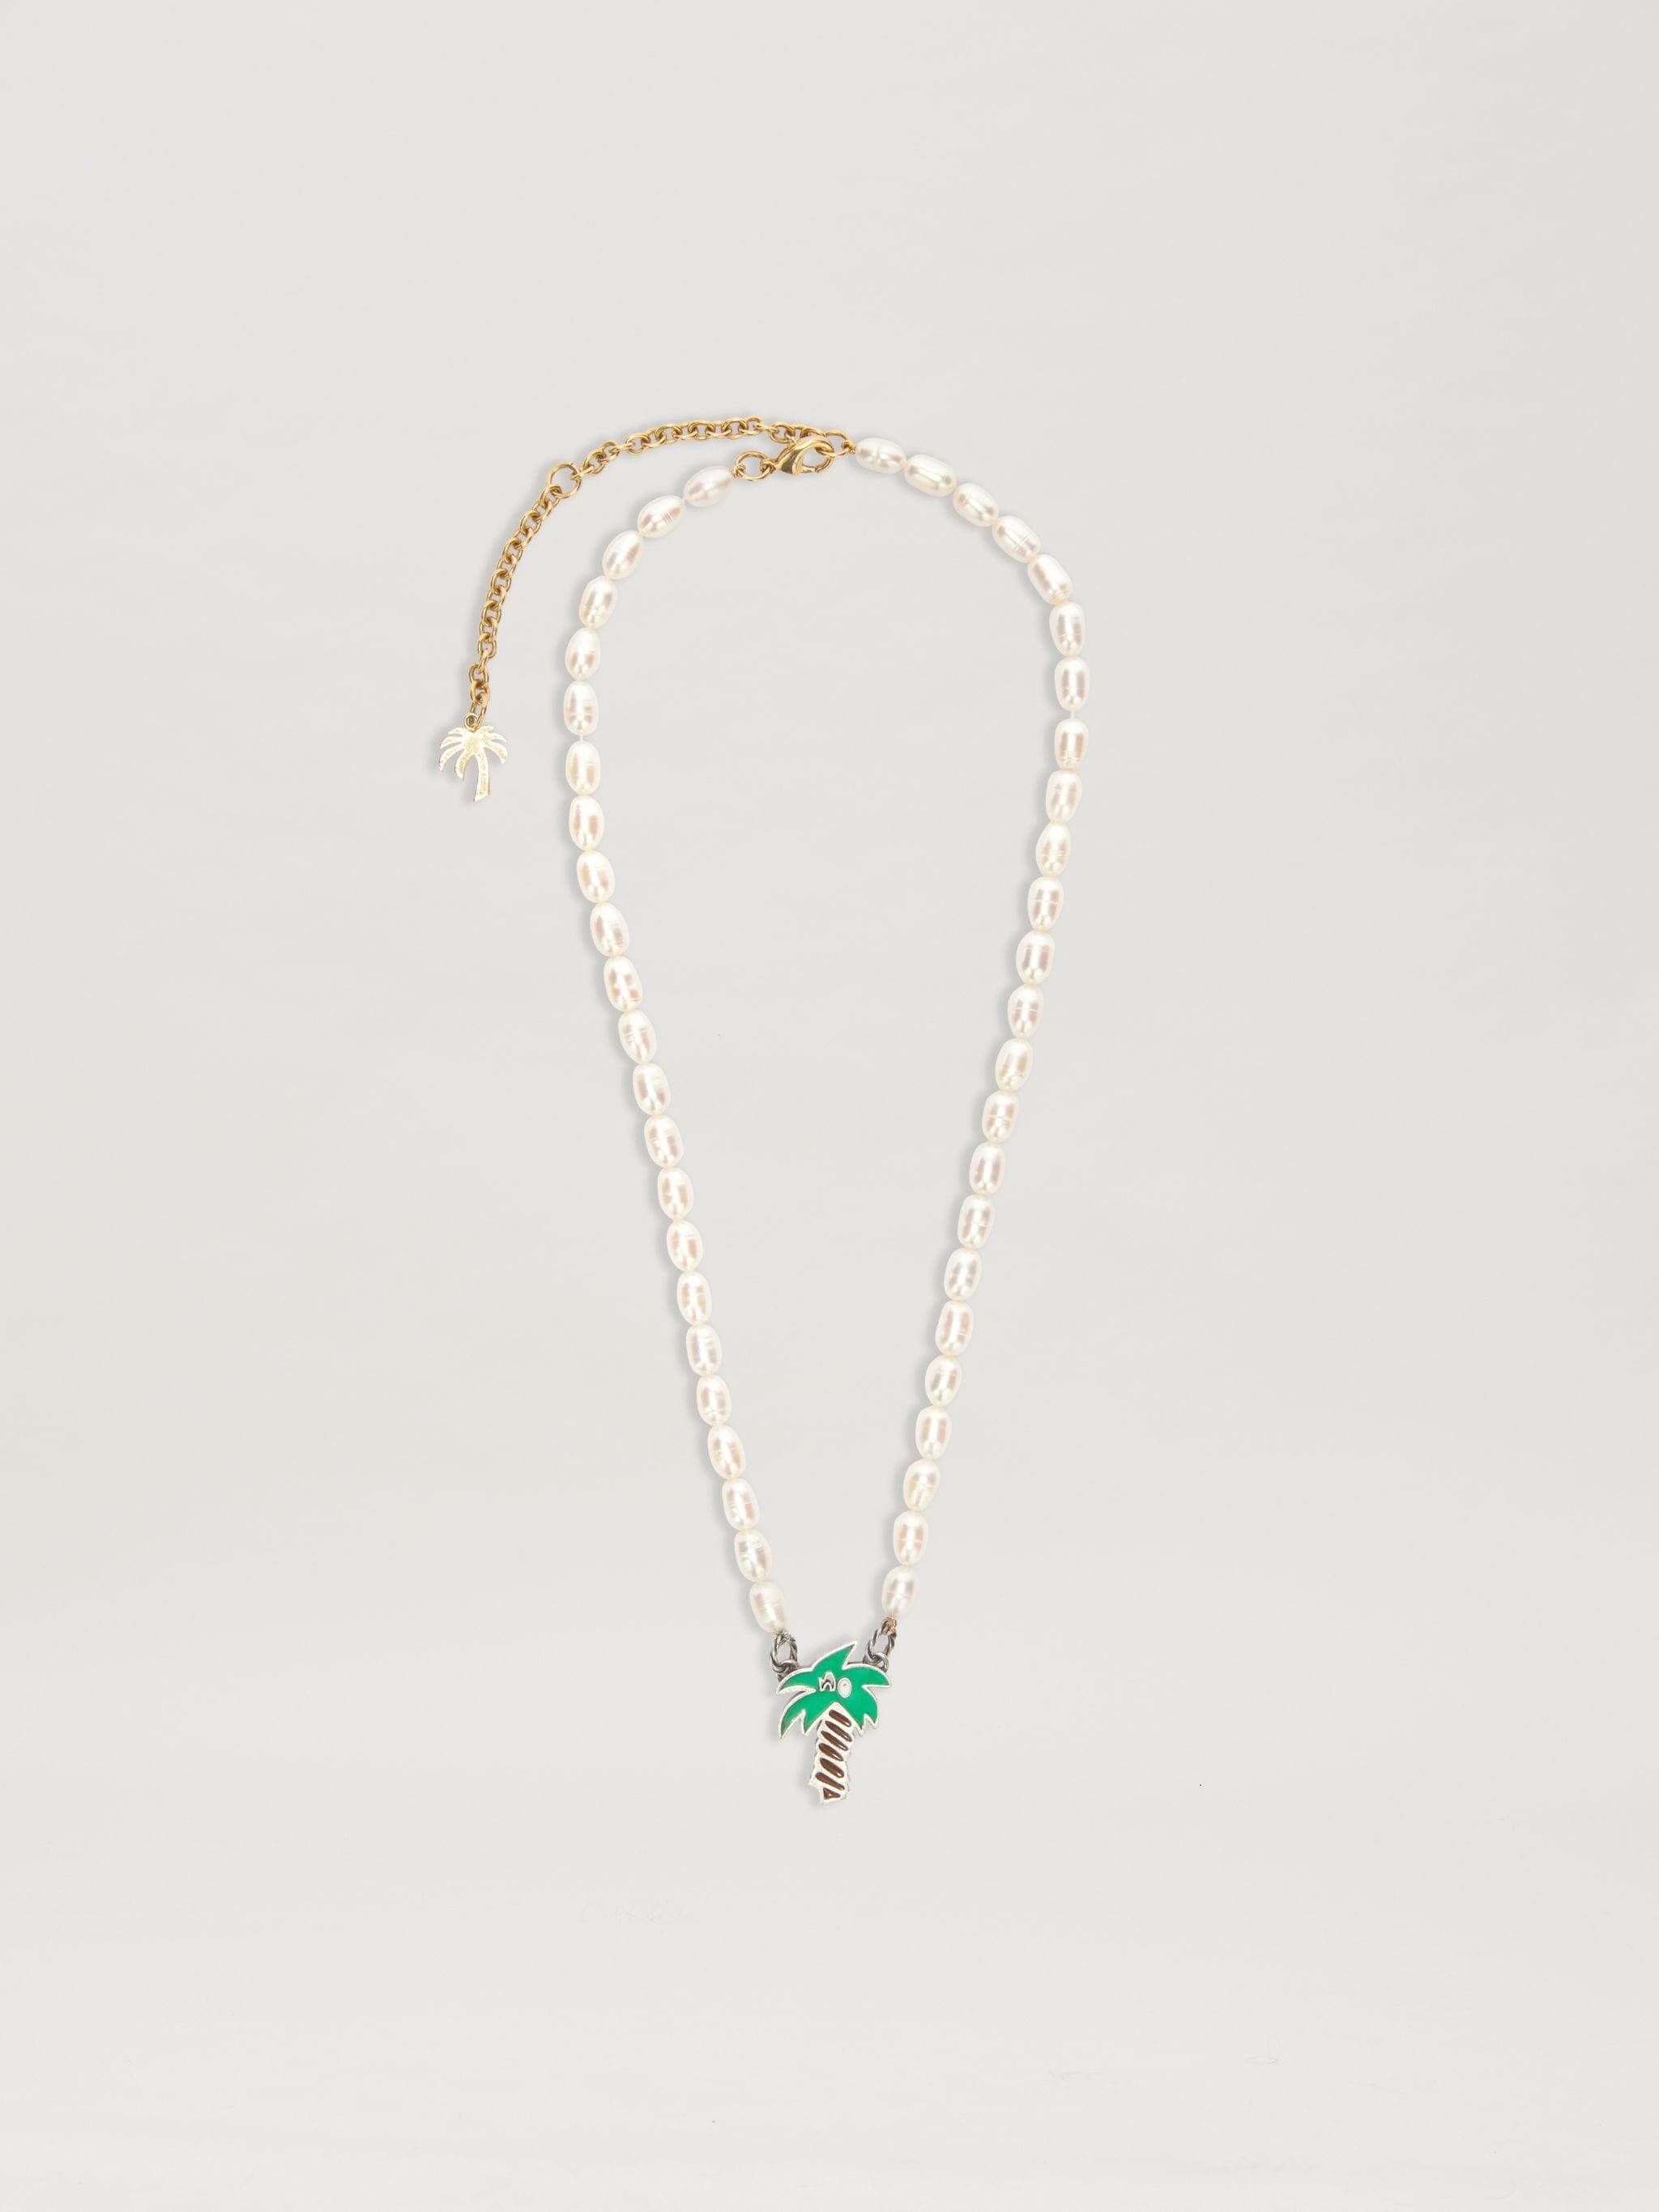 Sketchy Pearls Necklace - 1